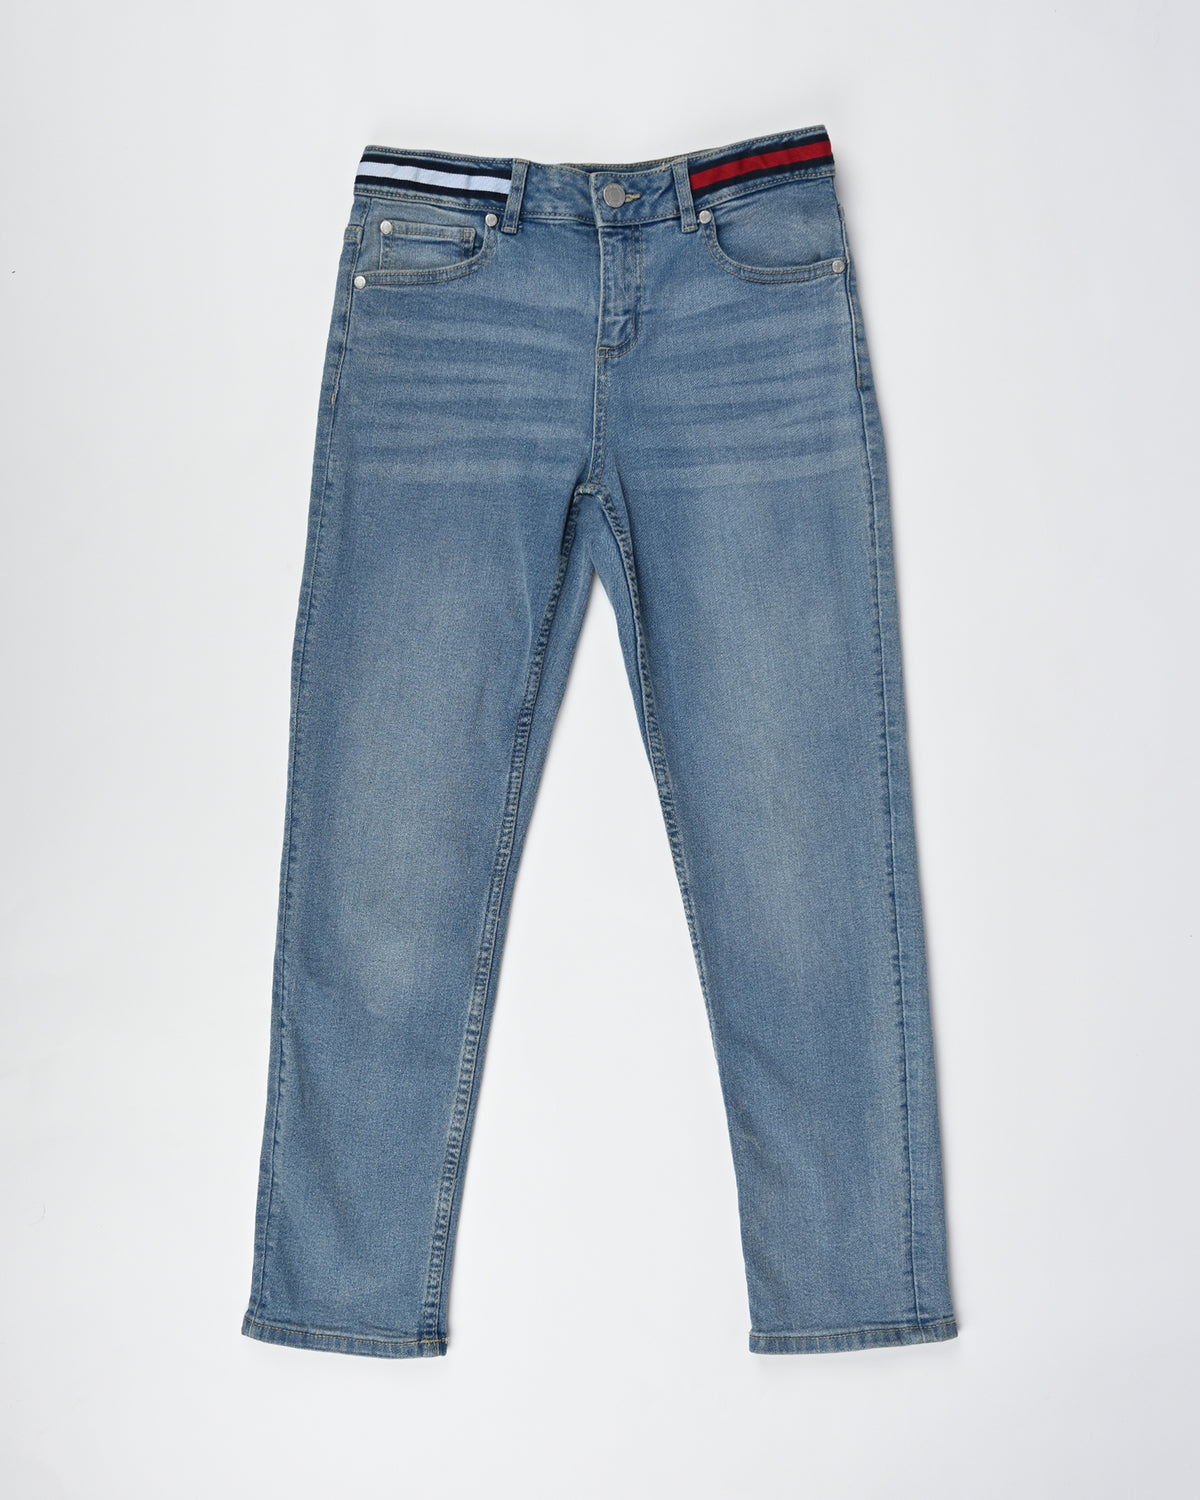 Finelook Boys Denim Slim Fit Jeans